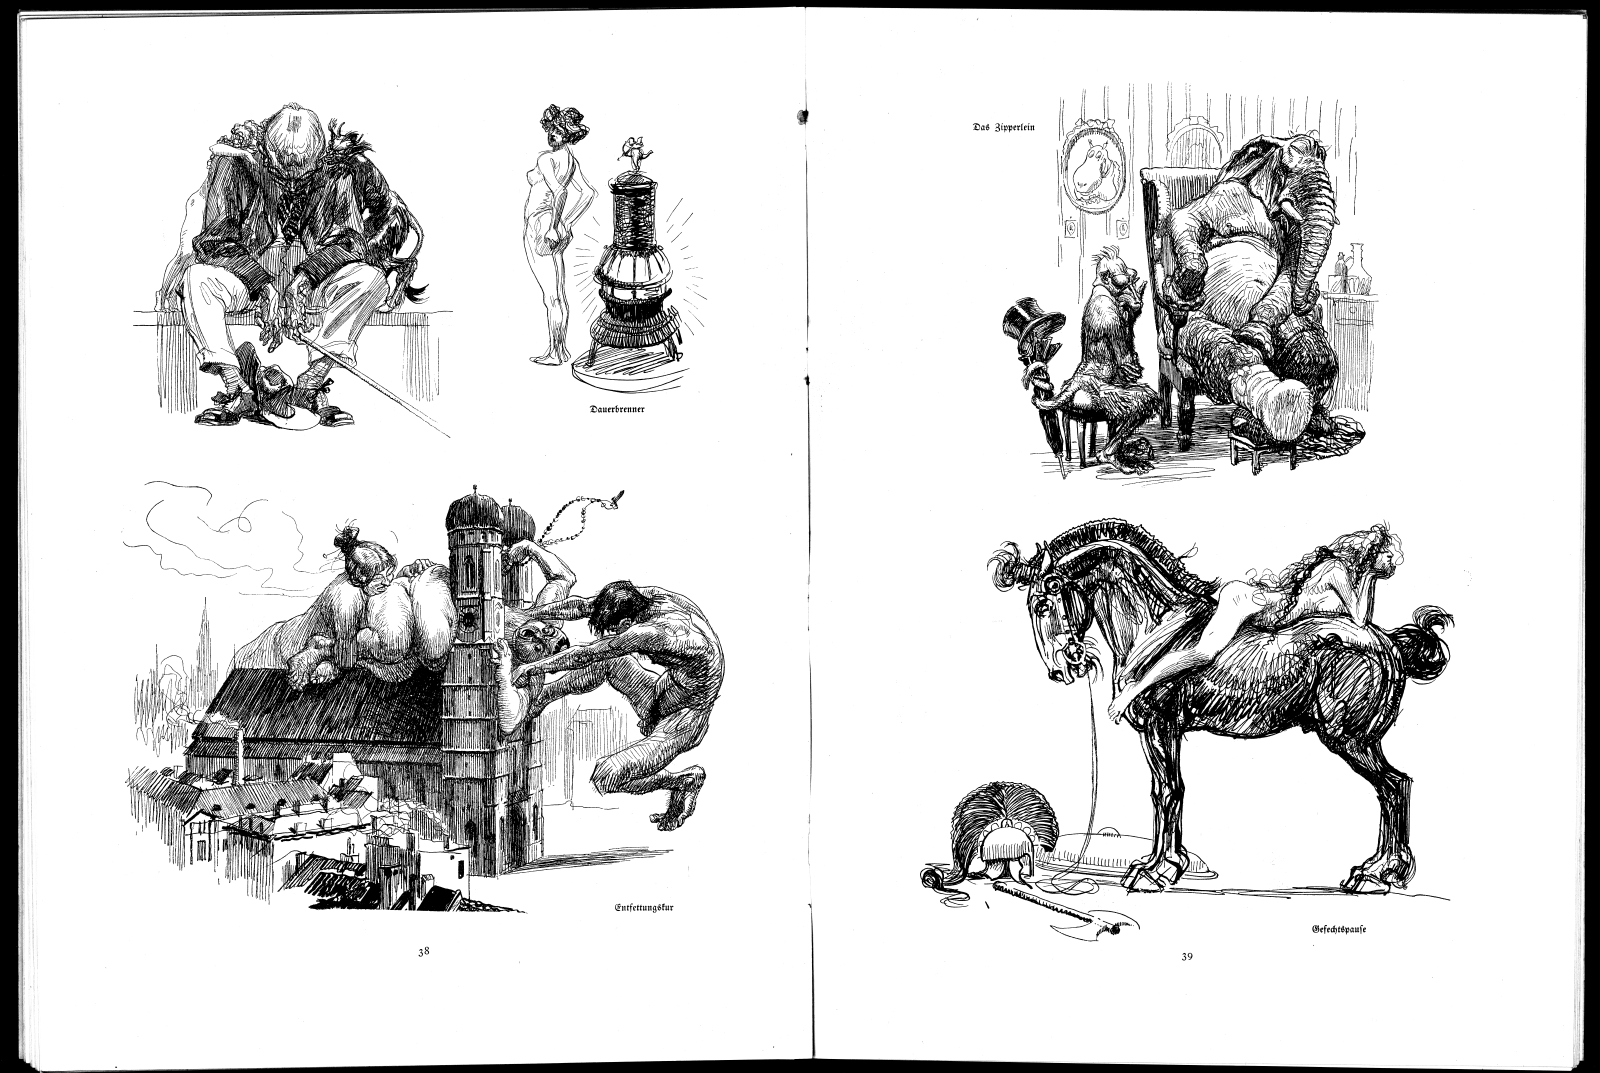 Heinrich Kley Leut Und Viecher Pages 38-39